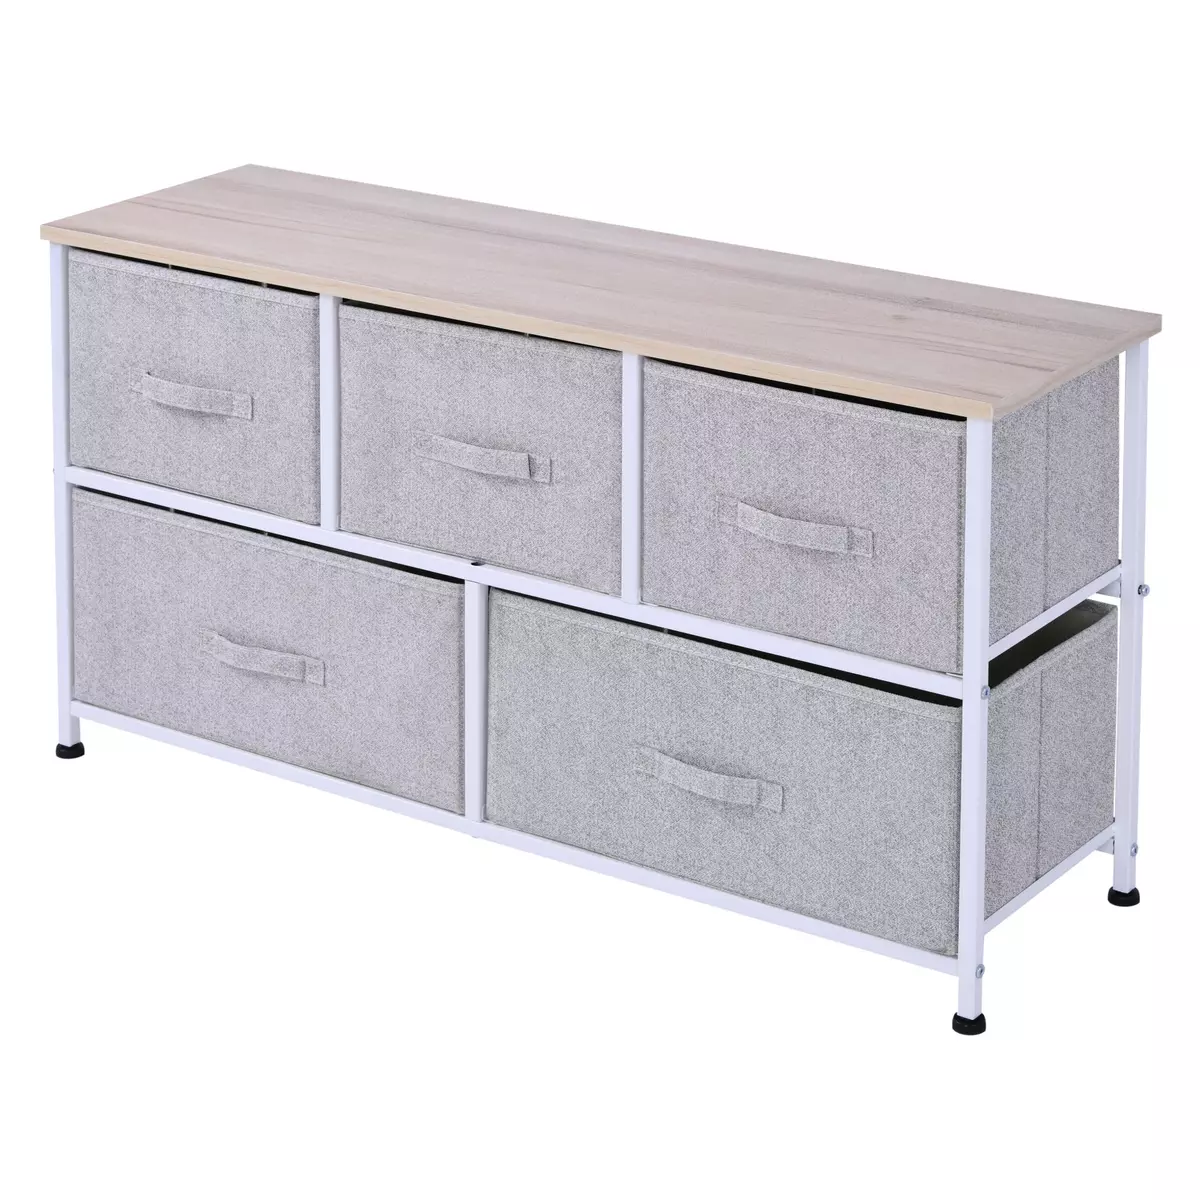 HOMCOM Commode meuble de rangement dim. 100L x 30l x 54H cm 5 tiroirs non-tissés gris structure métal blanc plateau MDF bois clair